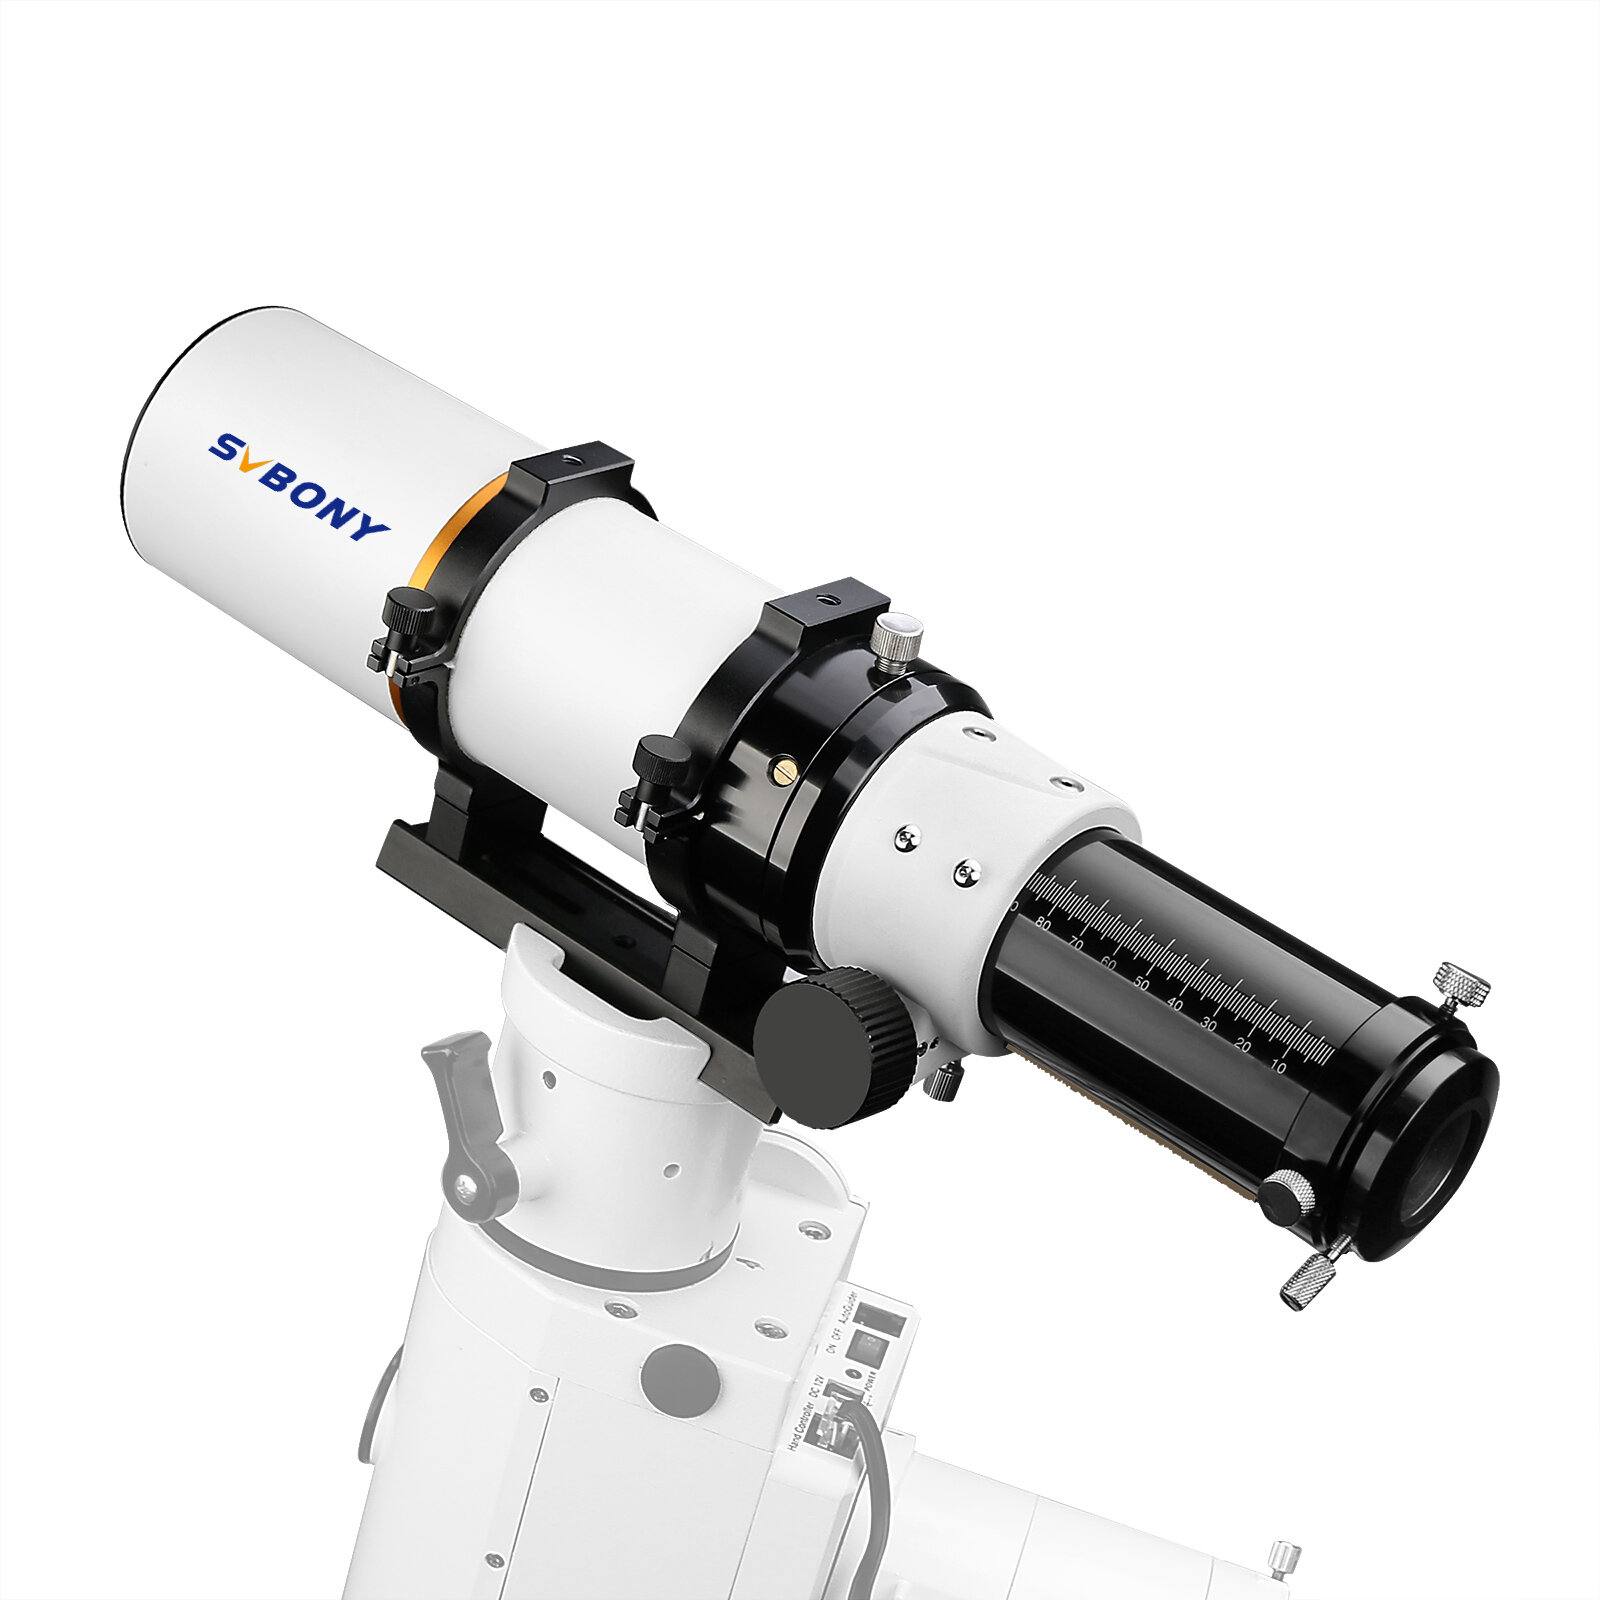 Refraktoros csillagászati teleszkóp SVBONY F9359A White70/420 F6 (OTA) alumínium főtükörrel és ED objektívvel kültéri fotózáshoz és kempingezéshez.